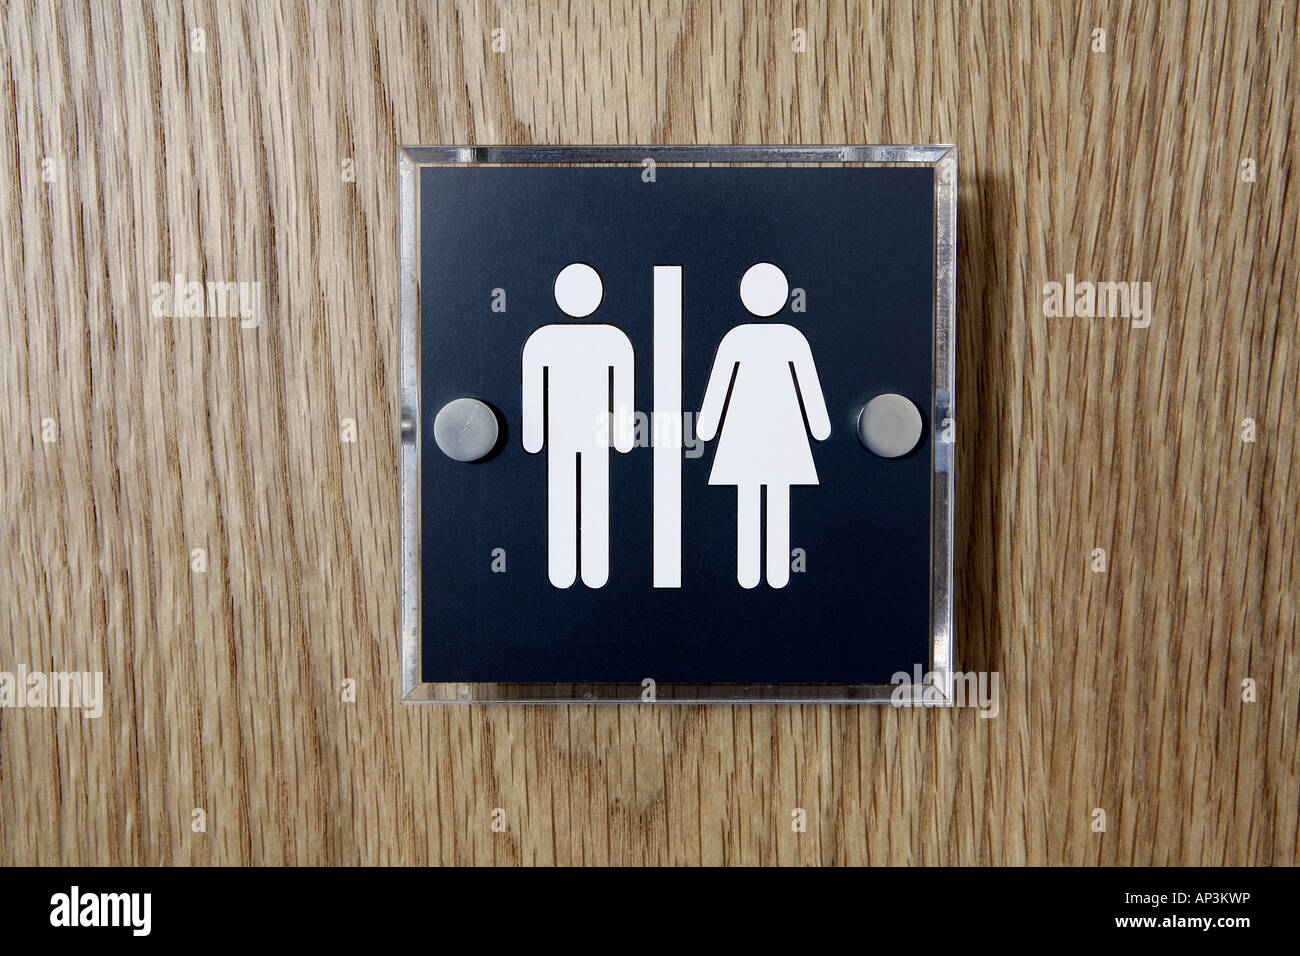 Toilet door sign for men and women unisex washroom Stock Photo